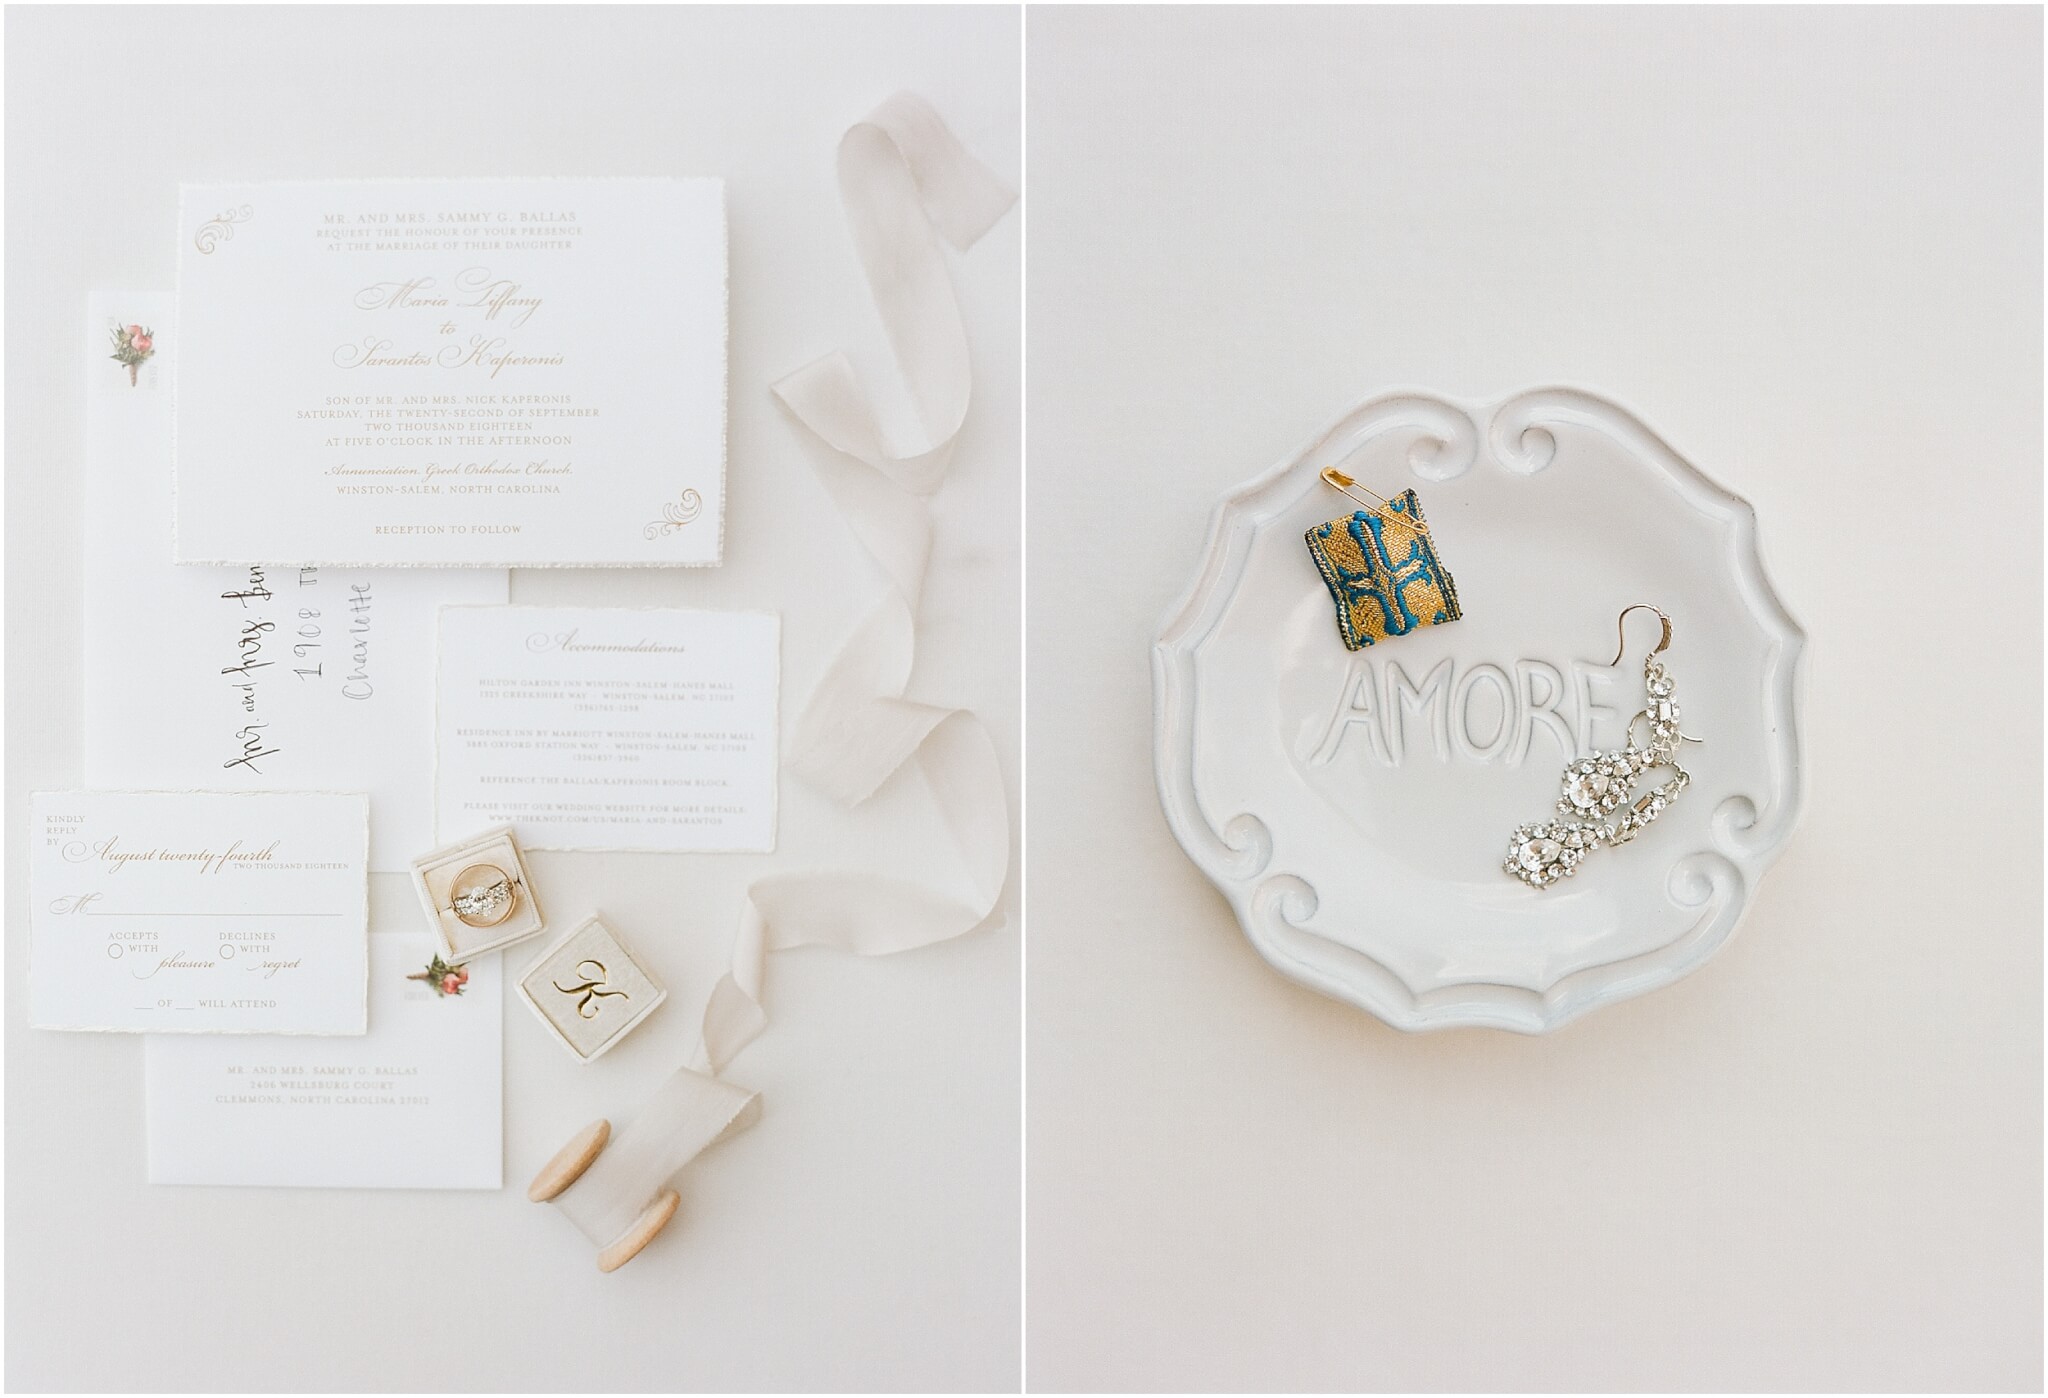 Elegant wedding stationery details